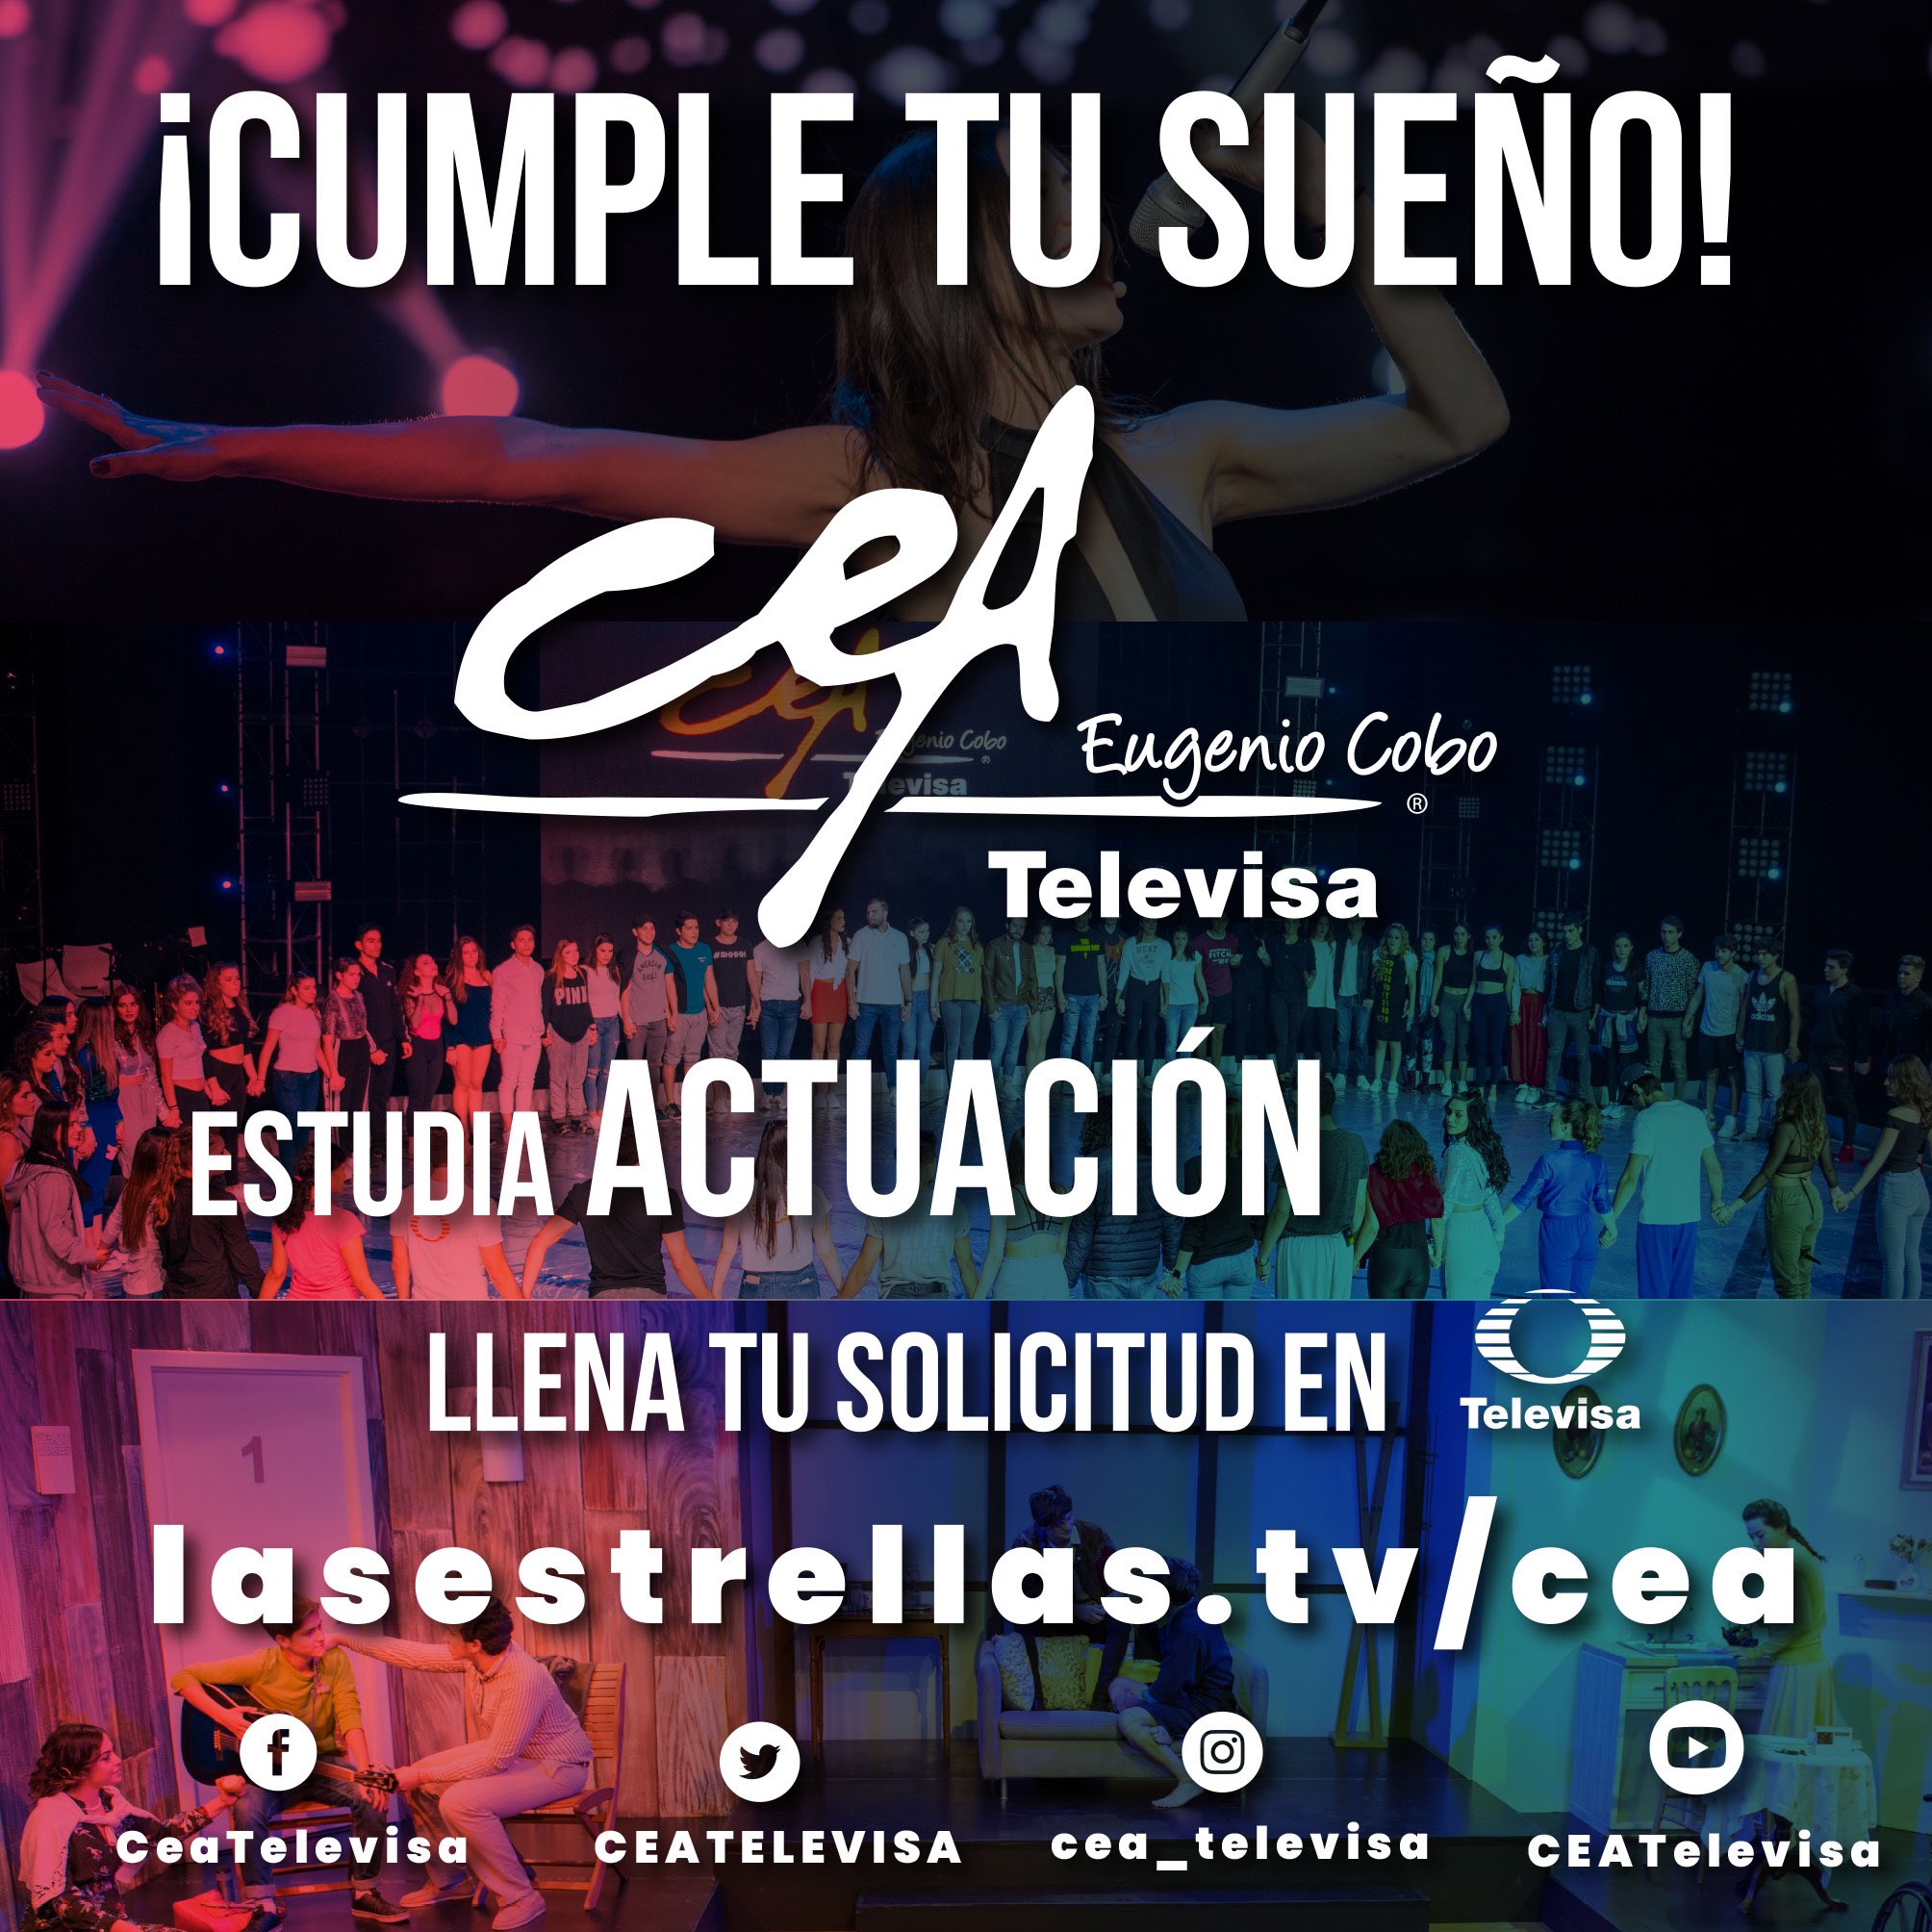 CEA Televisa on Twitter: 